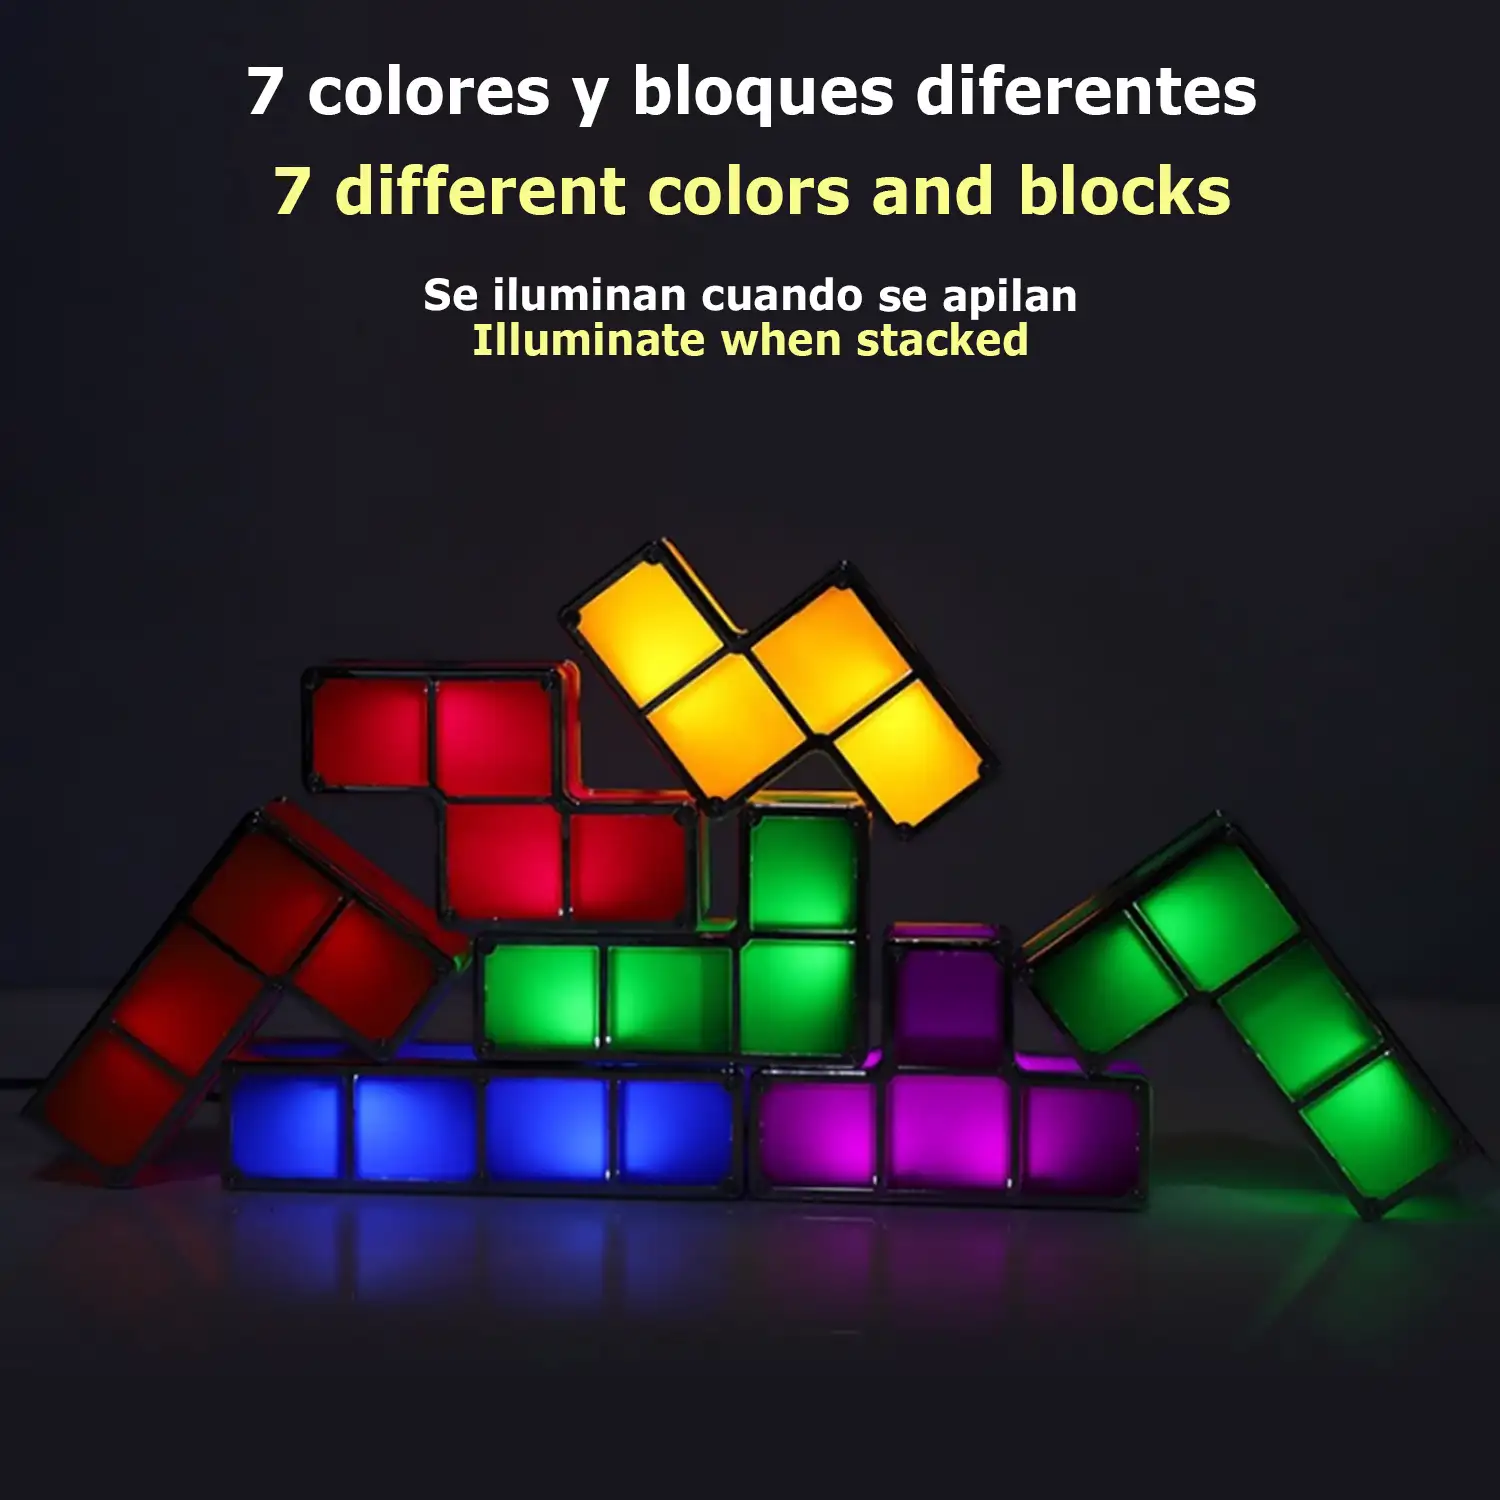 Lámpara retro Tetris LED multicolor. Junta las piezas y se iluminarán, crea formas libremente.